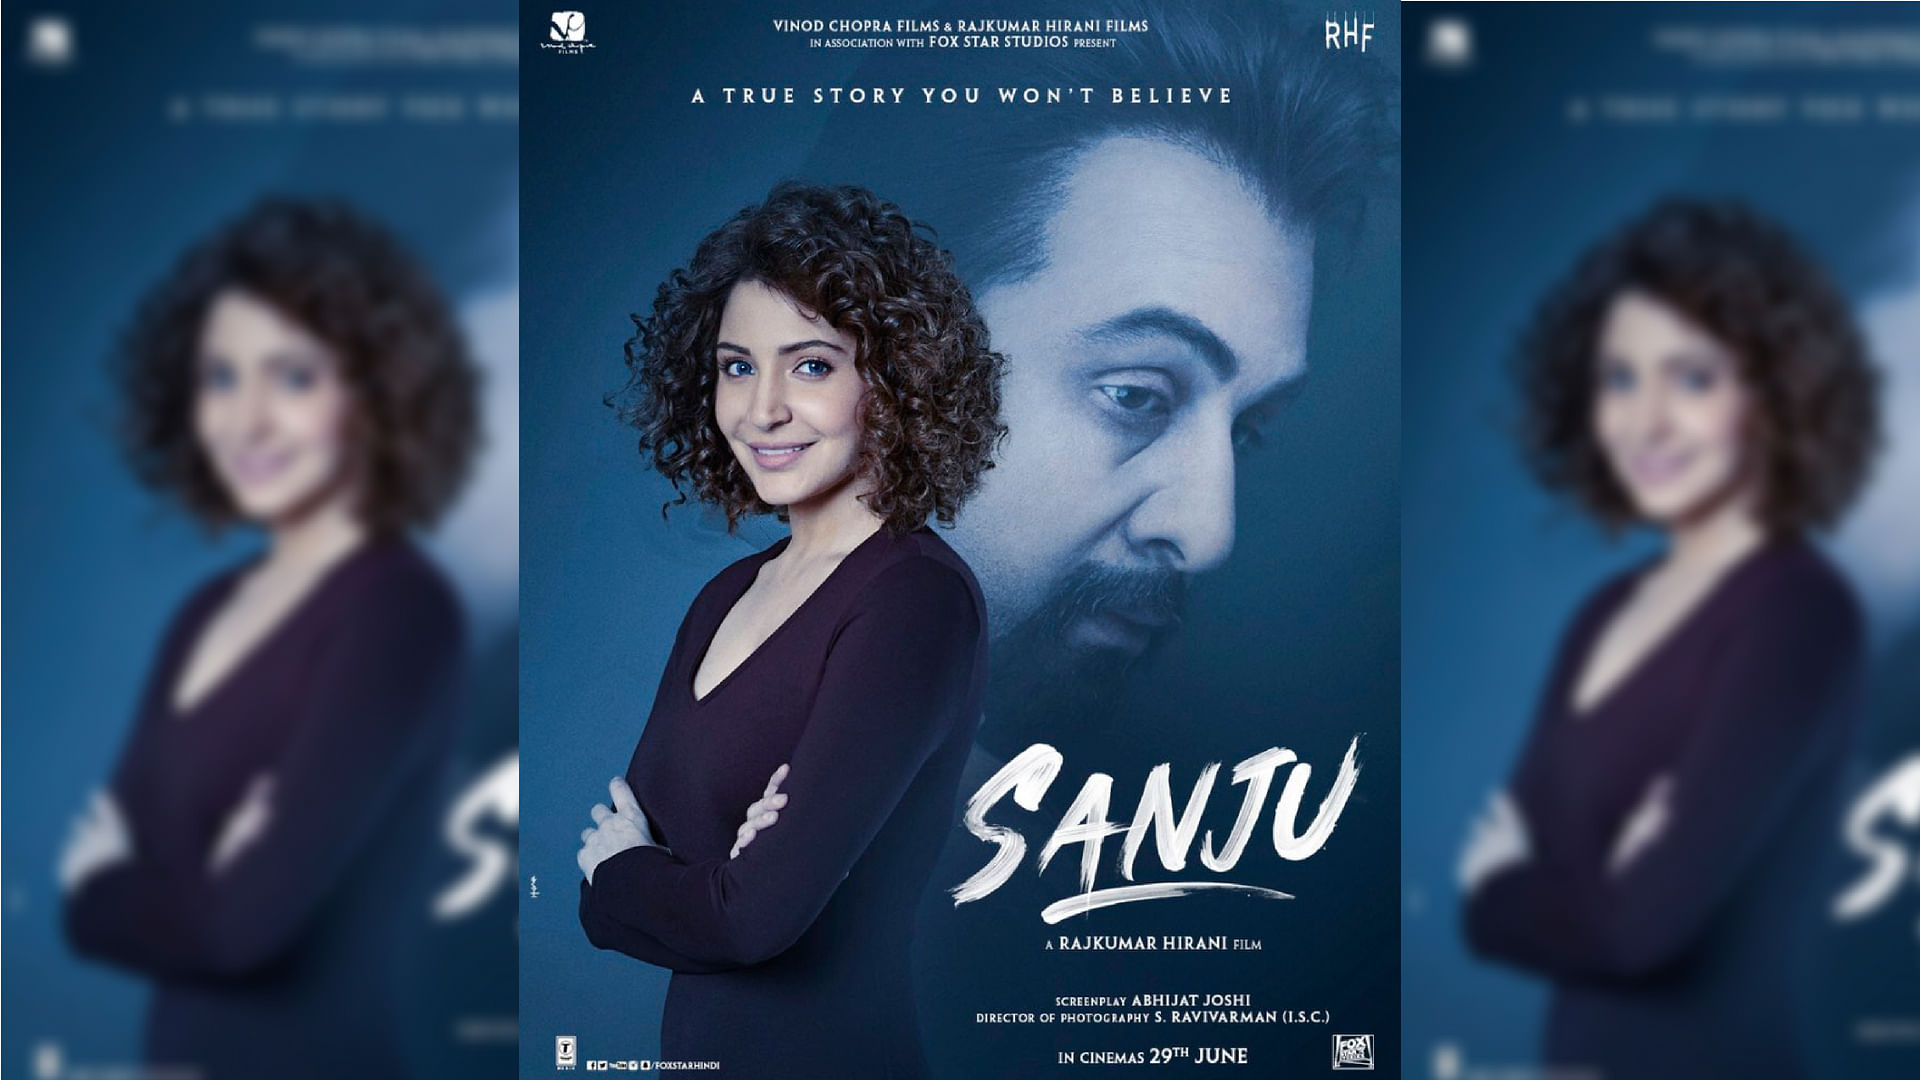 Actors Anushka Sharma and Ranbir Kapoor in the poster of ‘Sanju’.